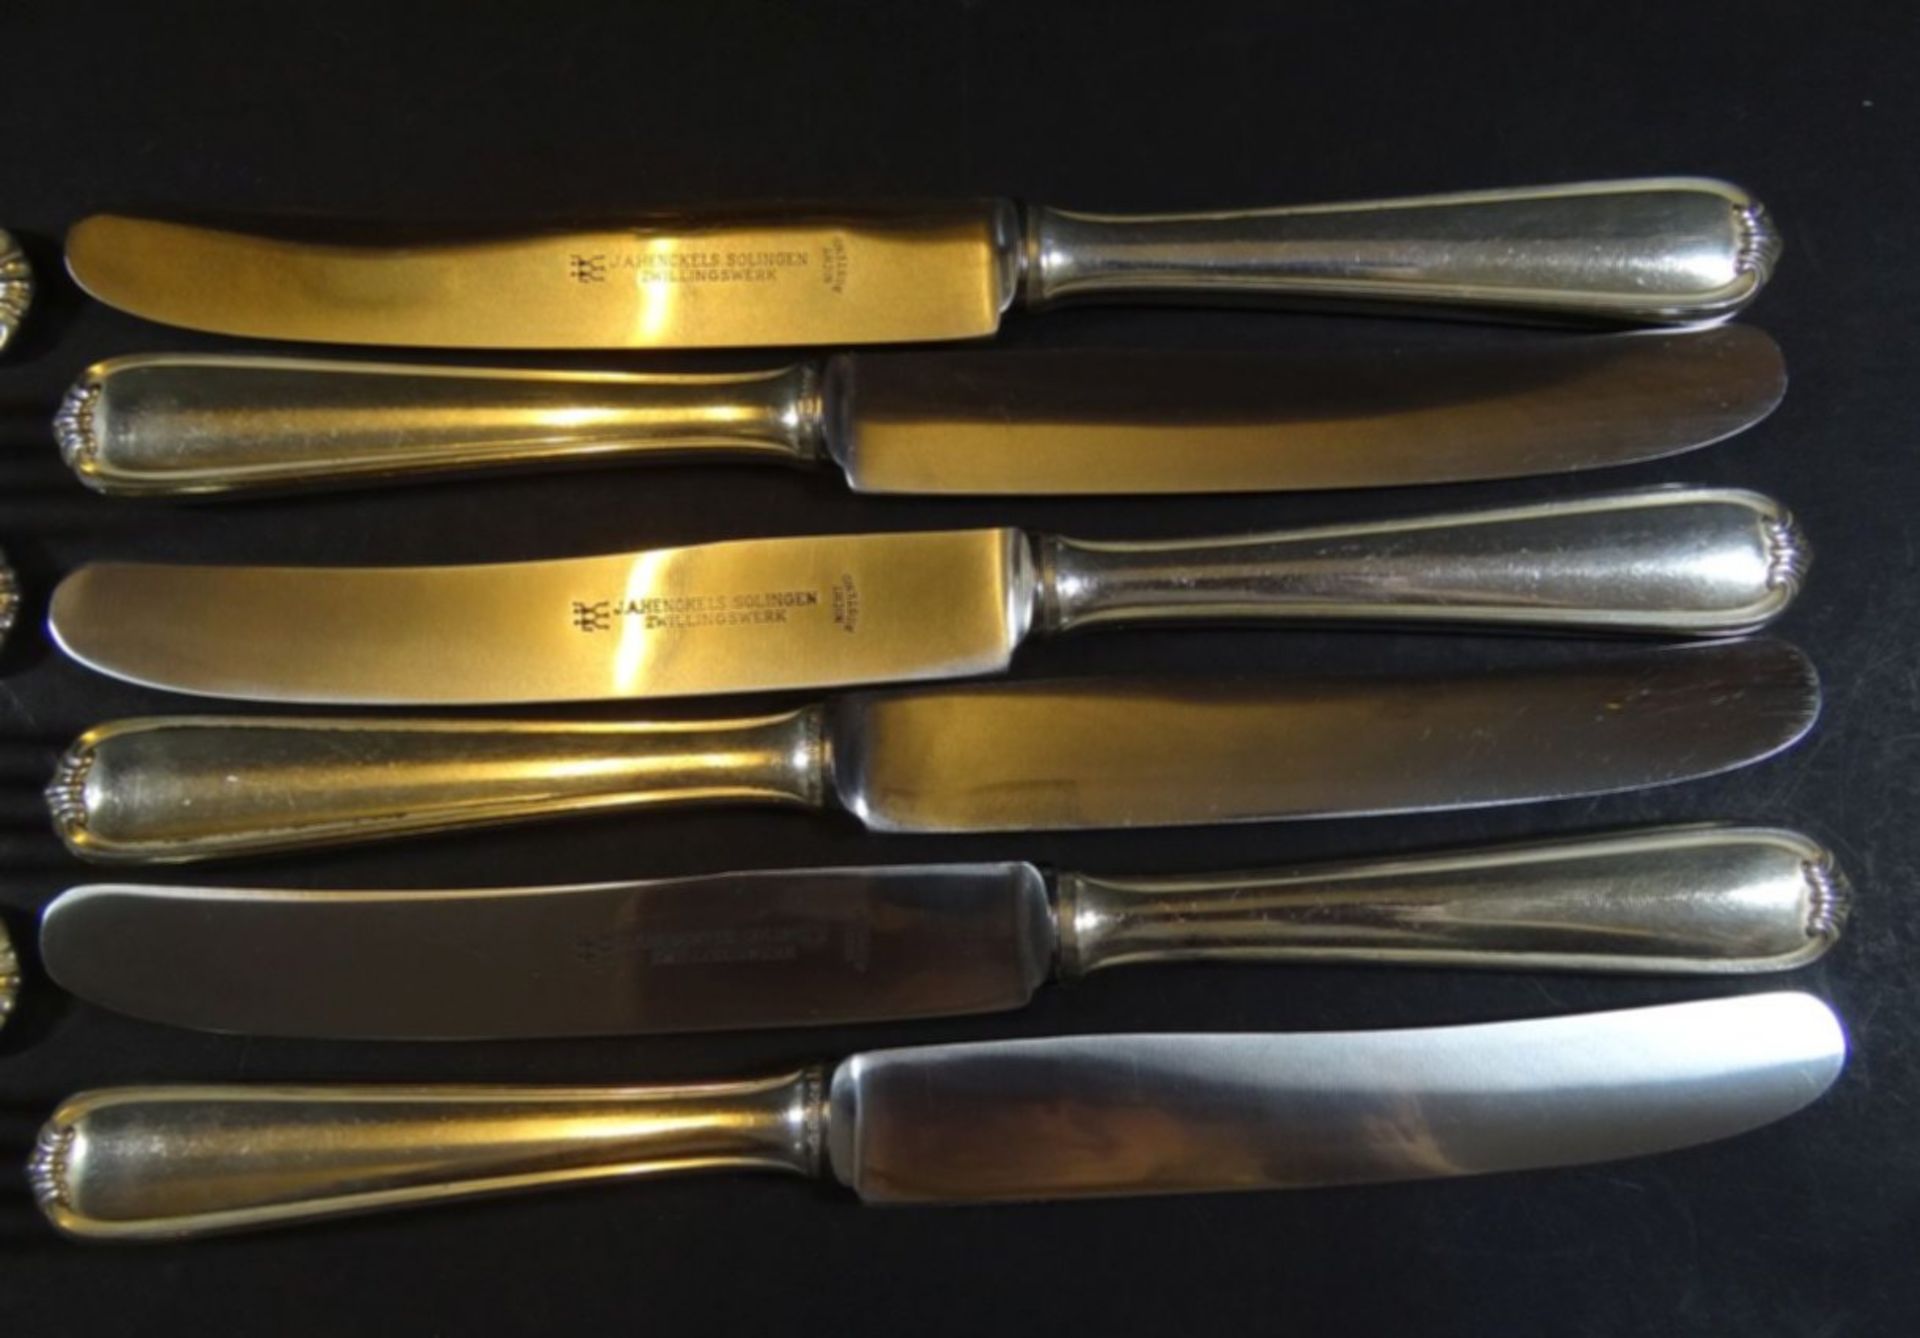 6 Speise-Messer und Gabeln, Silber-800, L-25 cm, Gabeln  zus. ca. 384 gr., Messer zus. 516 gr. - Bild 3 aus 5